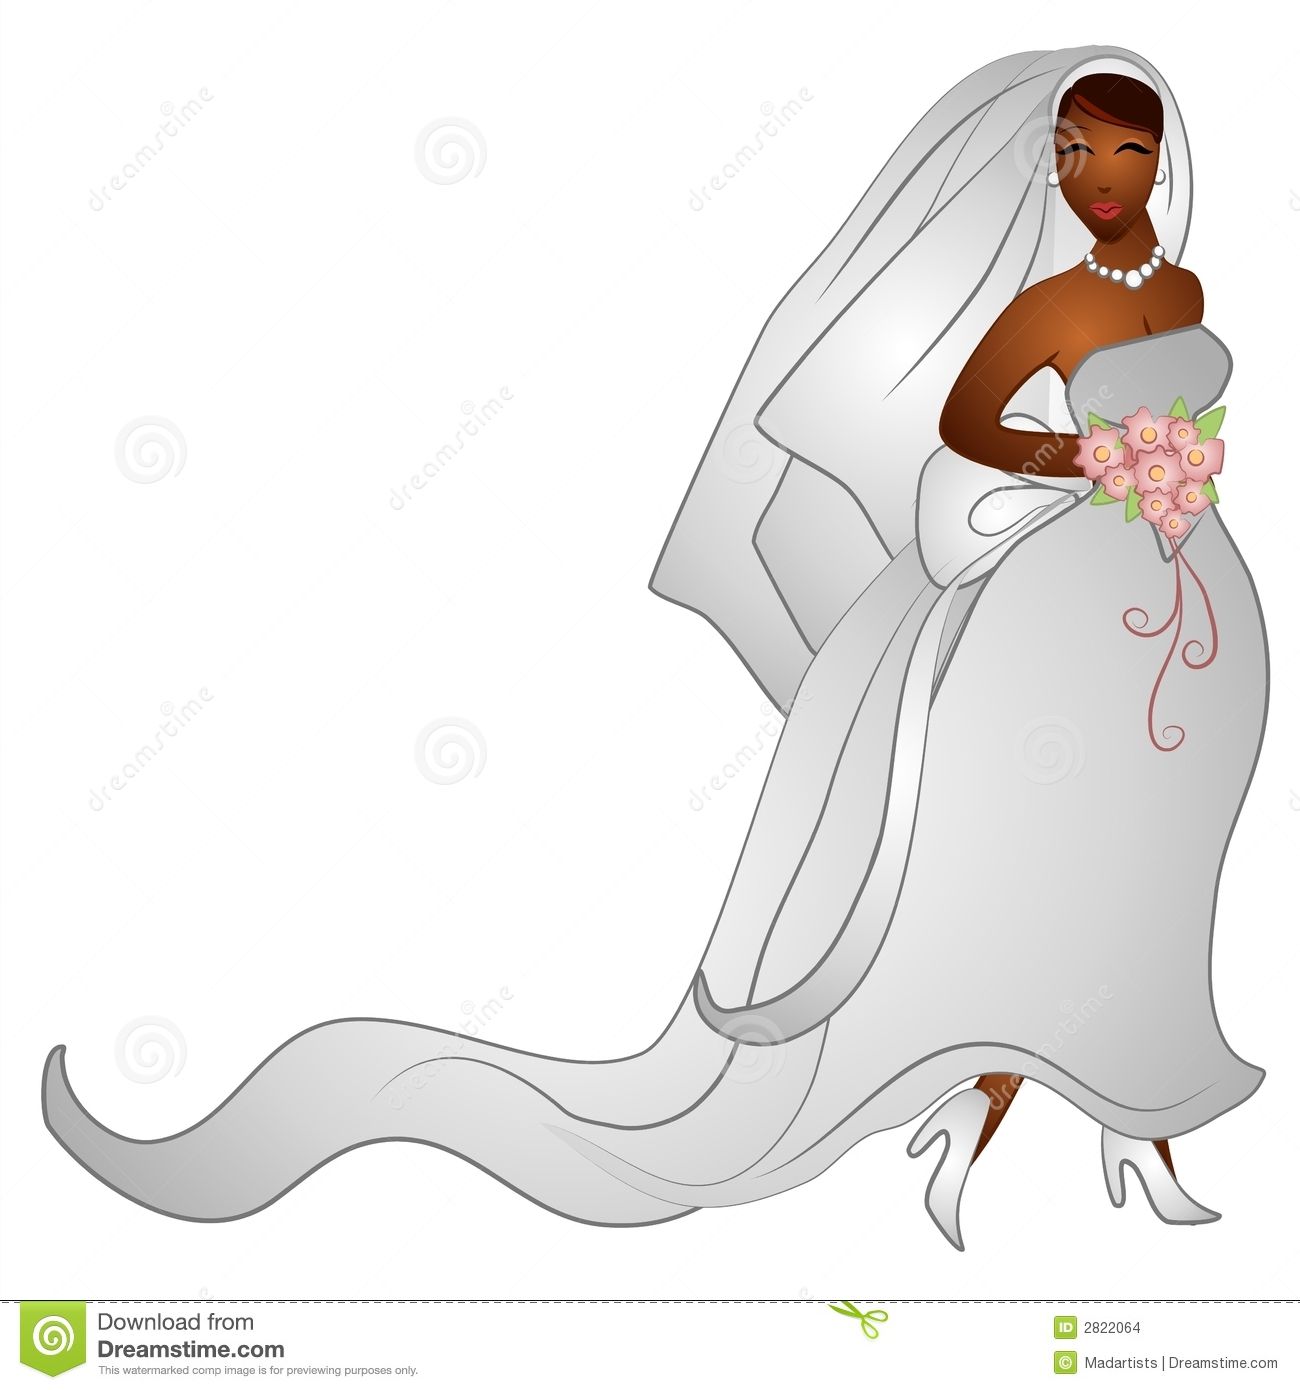 bride clipart bride girl